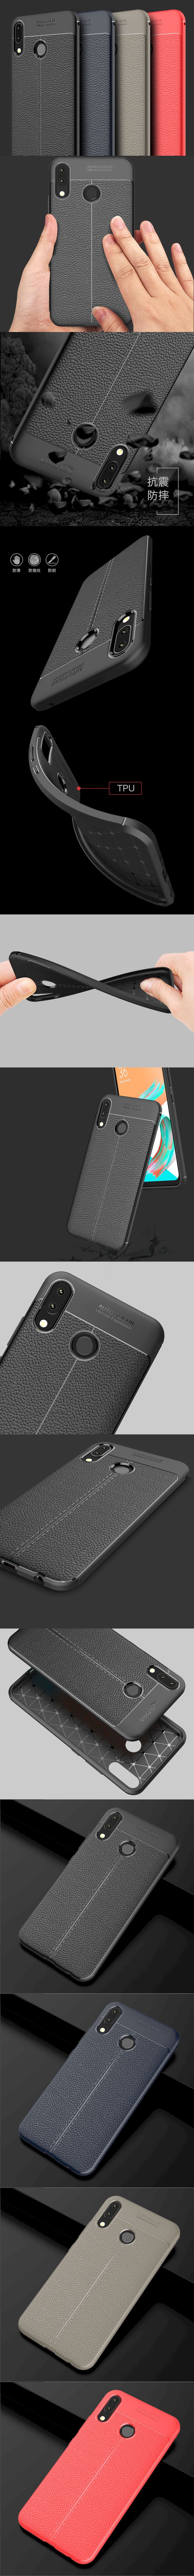 285-Asus-皮革紋造型超薄全包手機殼背蓋